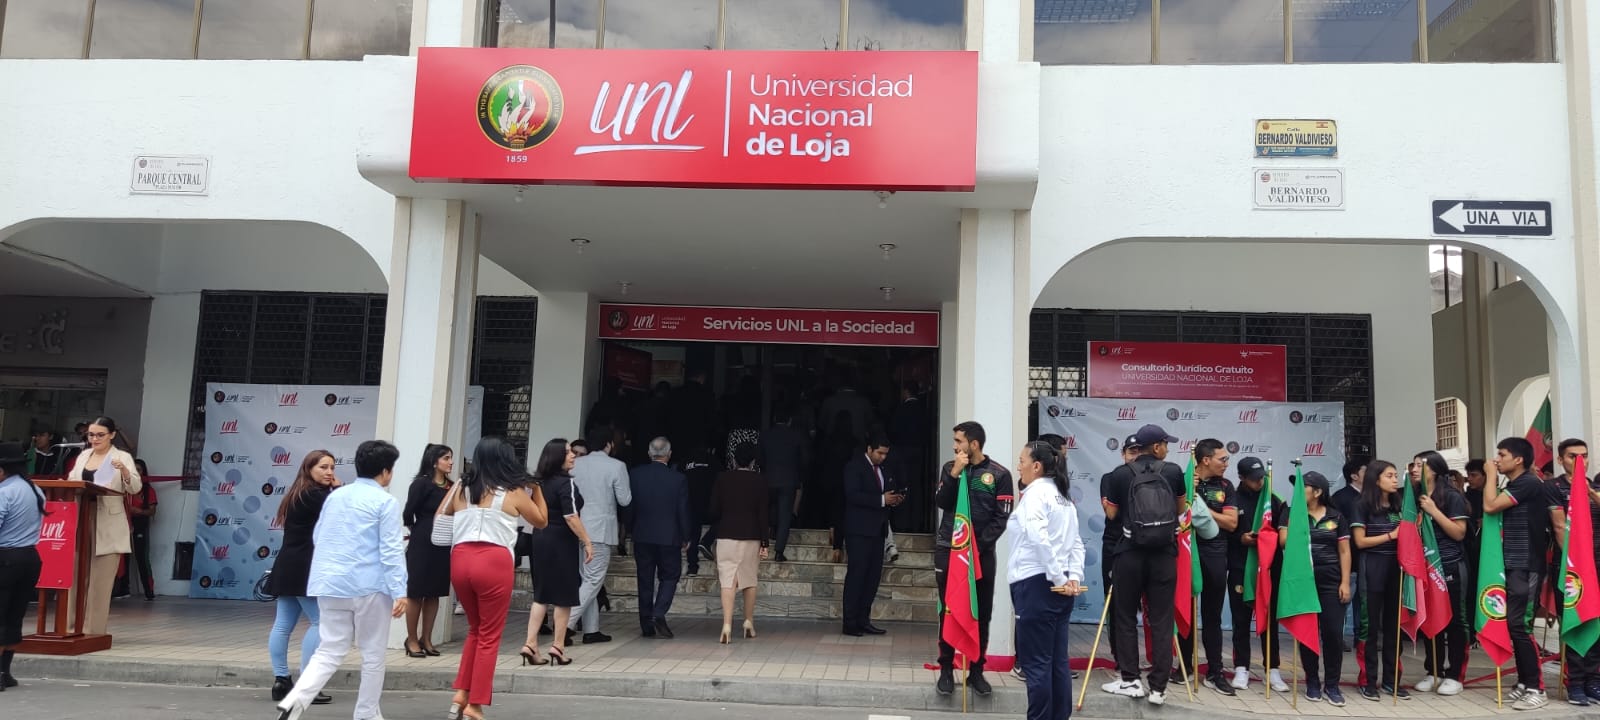 UNL hace presencia en el centro de Loja con una oficina de servicios de gratuitos